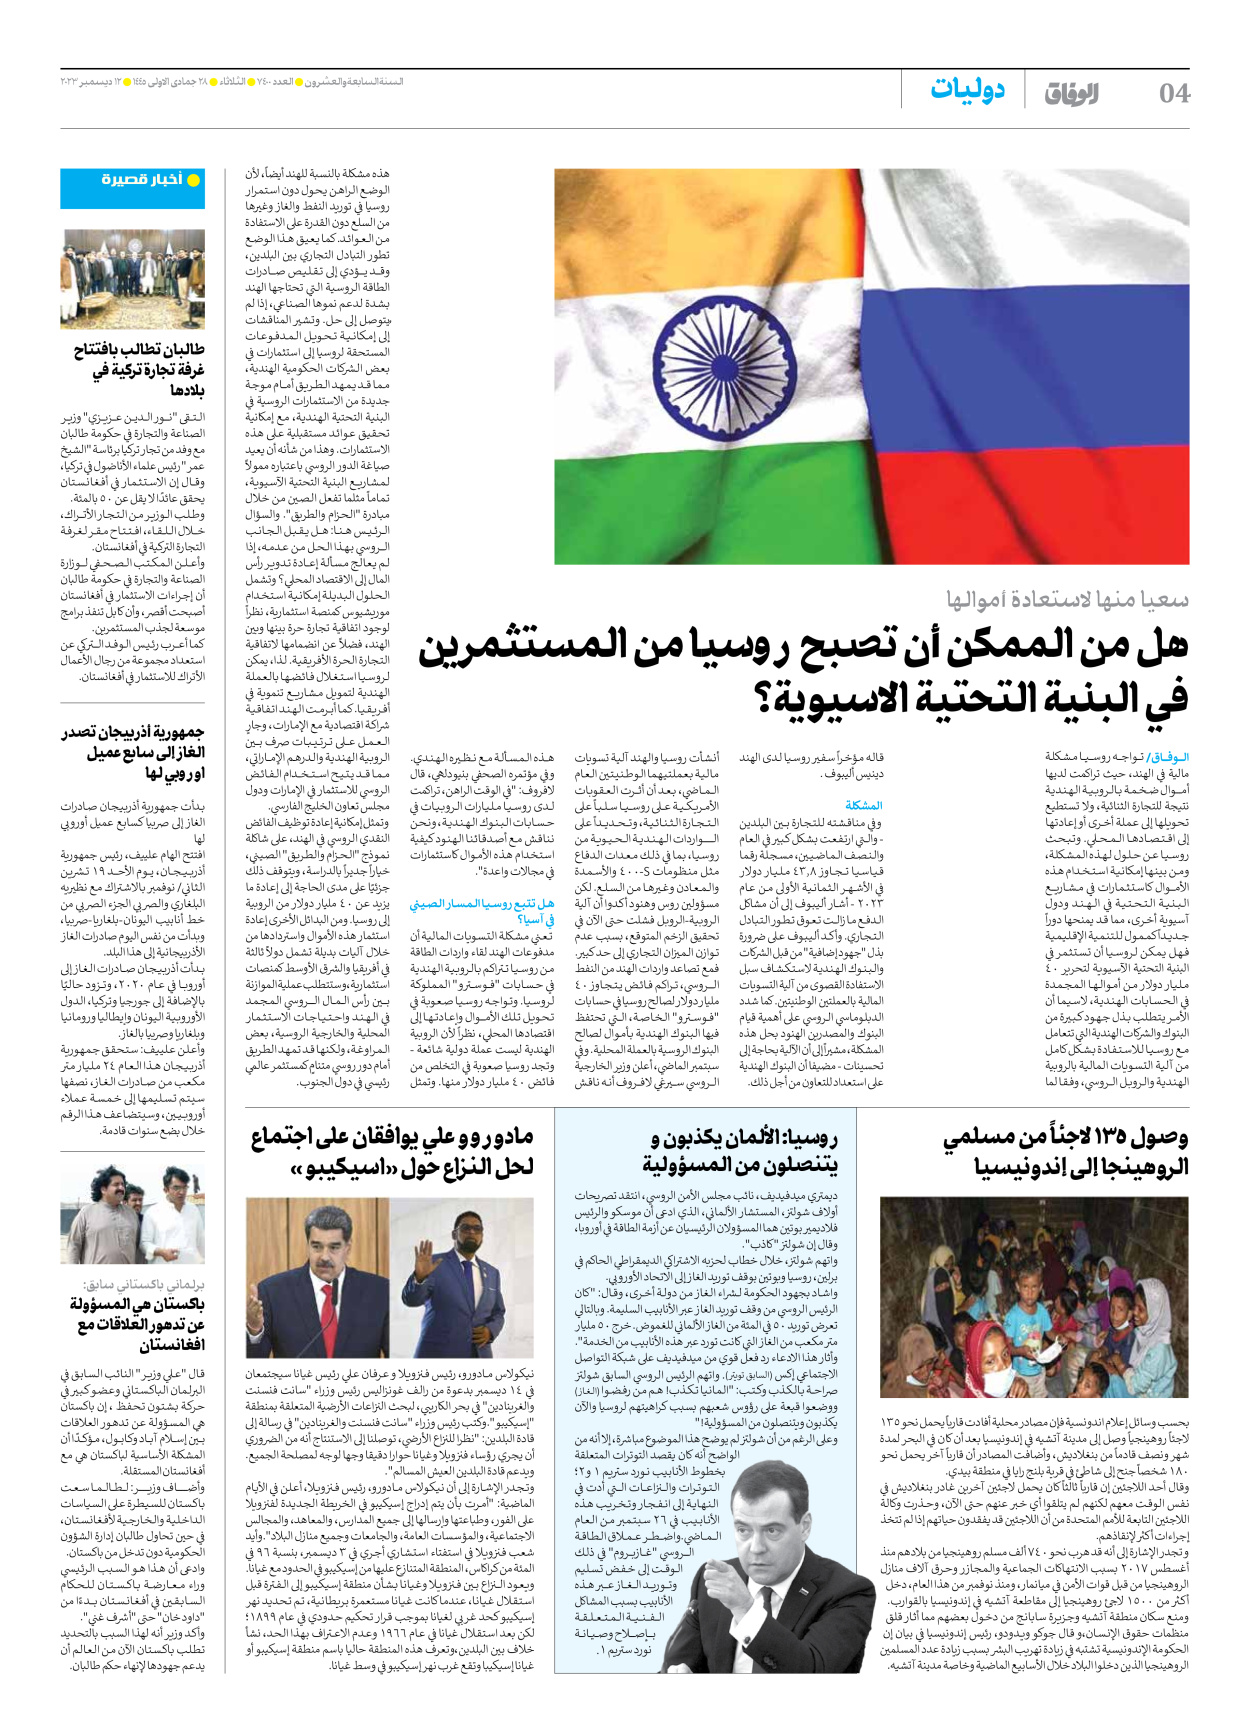 صحیفة ایران الدولیة الوفاق - العدد سبعة آلاف وأربعمائة - ١٢ ديسمبر ٢٠٢٣ - الصفحة ٤